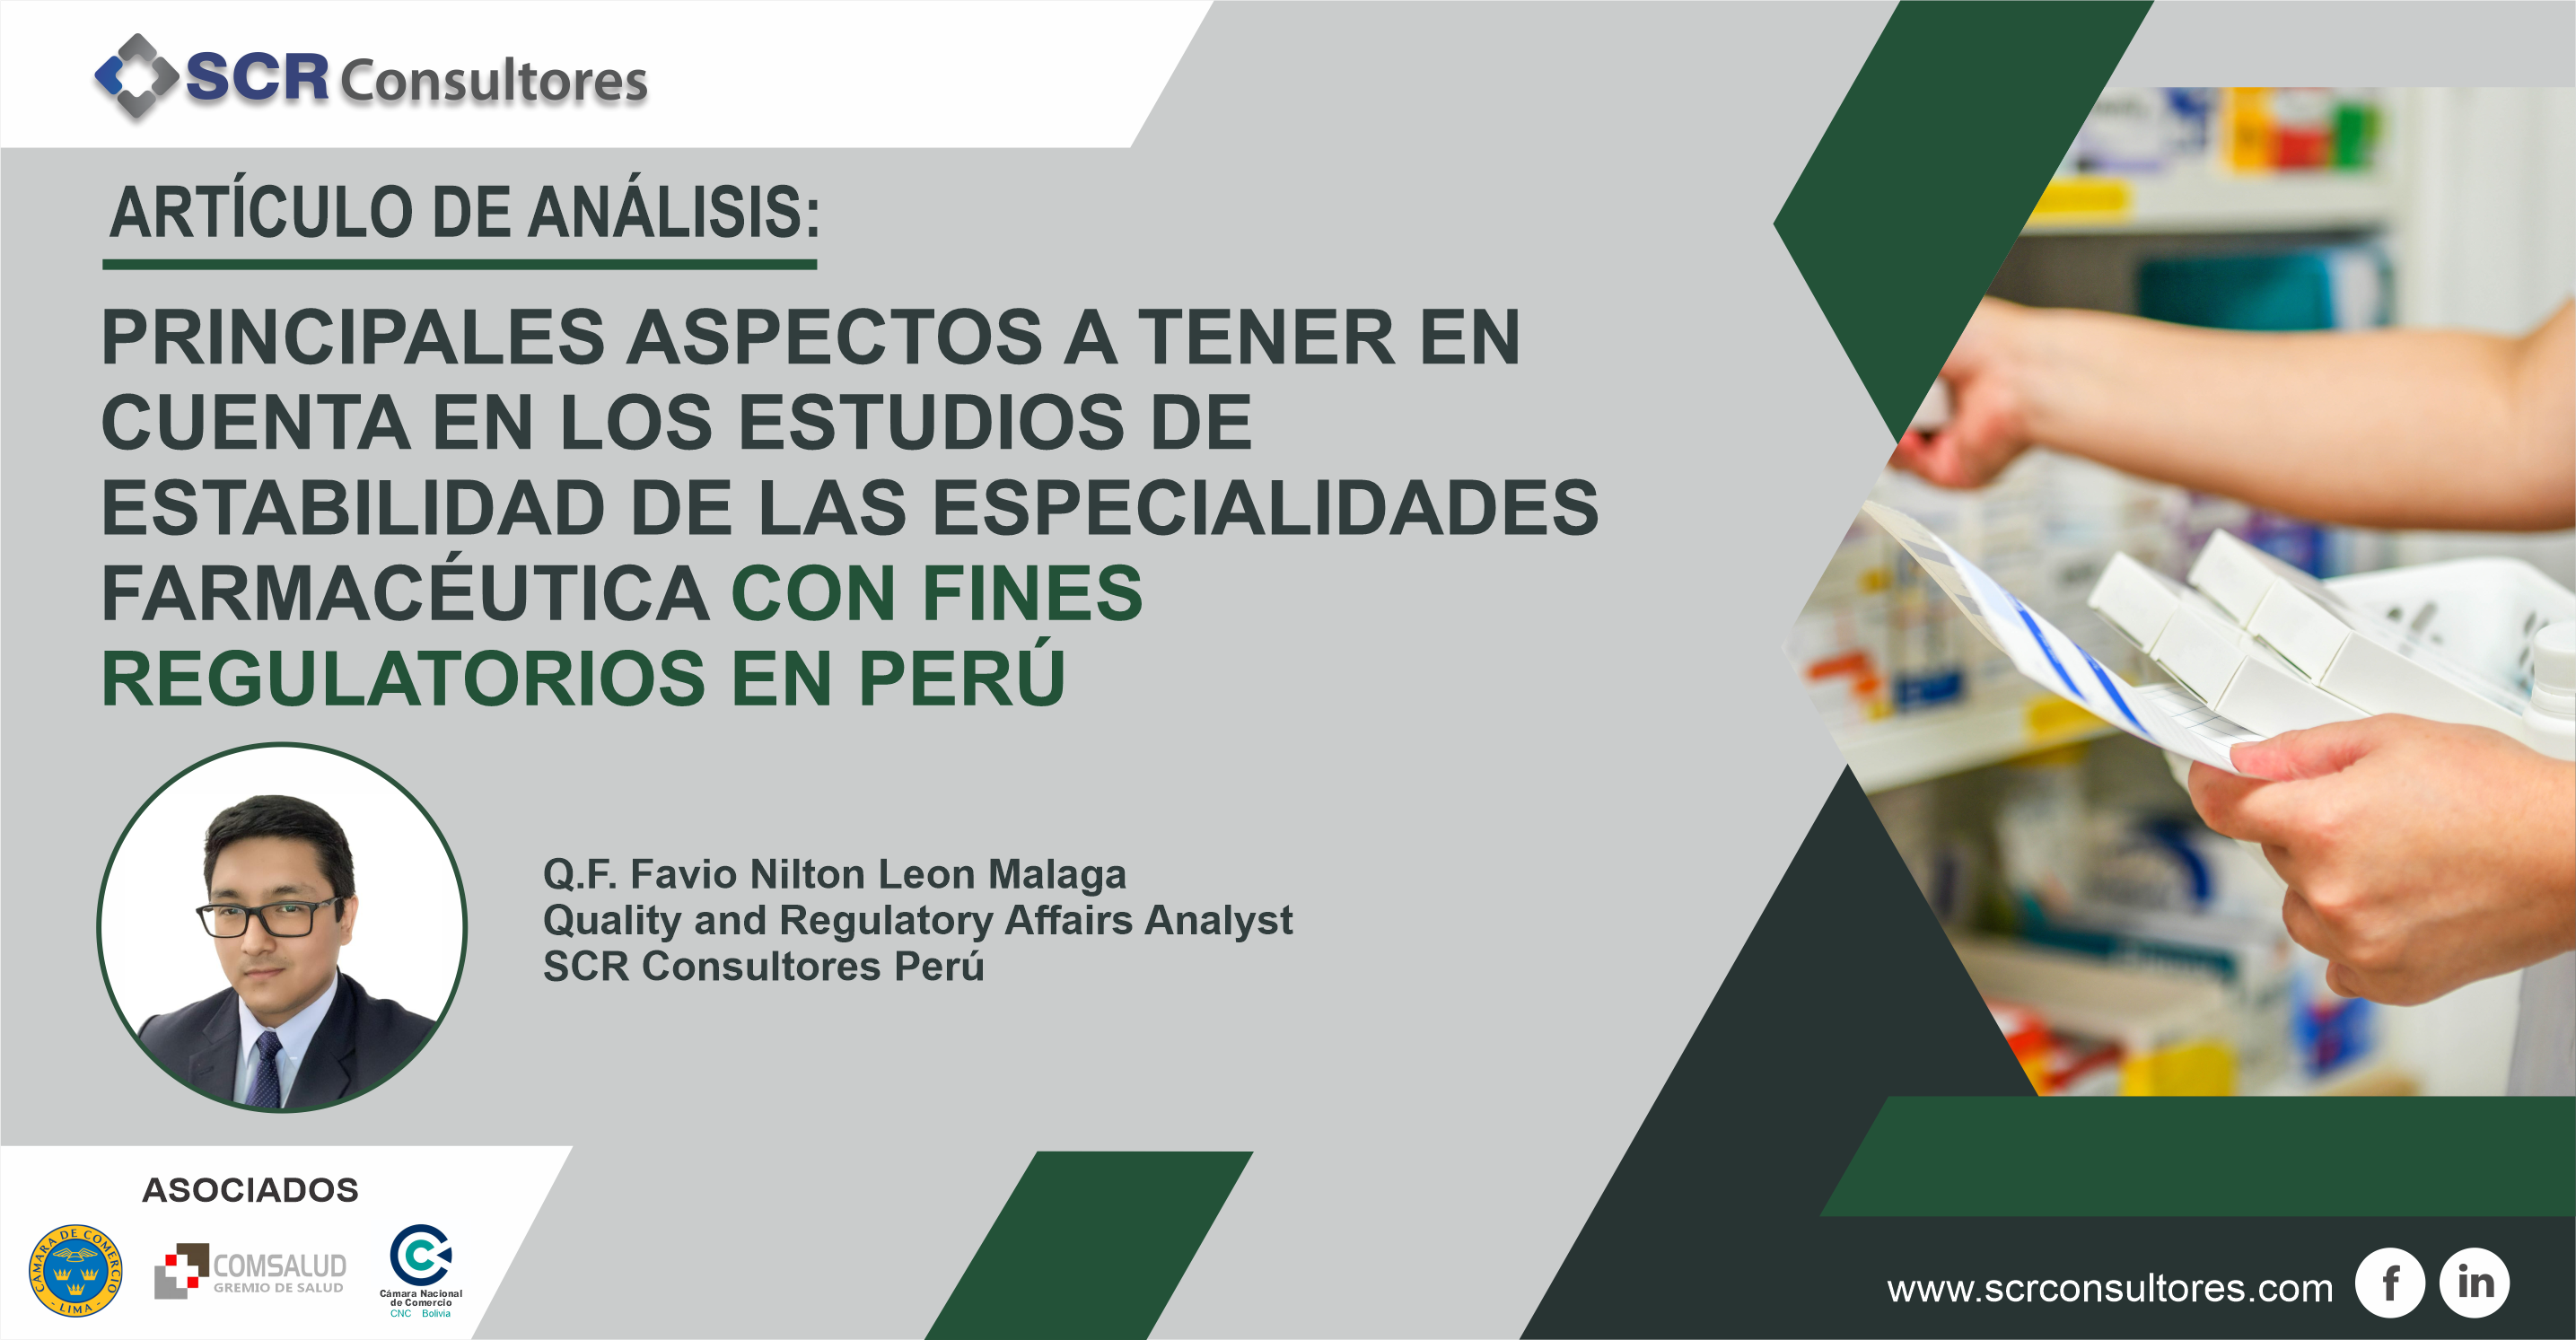 Principales aspectos a tener en cuenta en los estudios de estabiliad de las especialidades farmaceutica con fines regulatorios en Perú